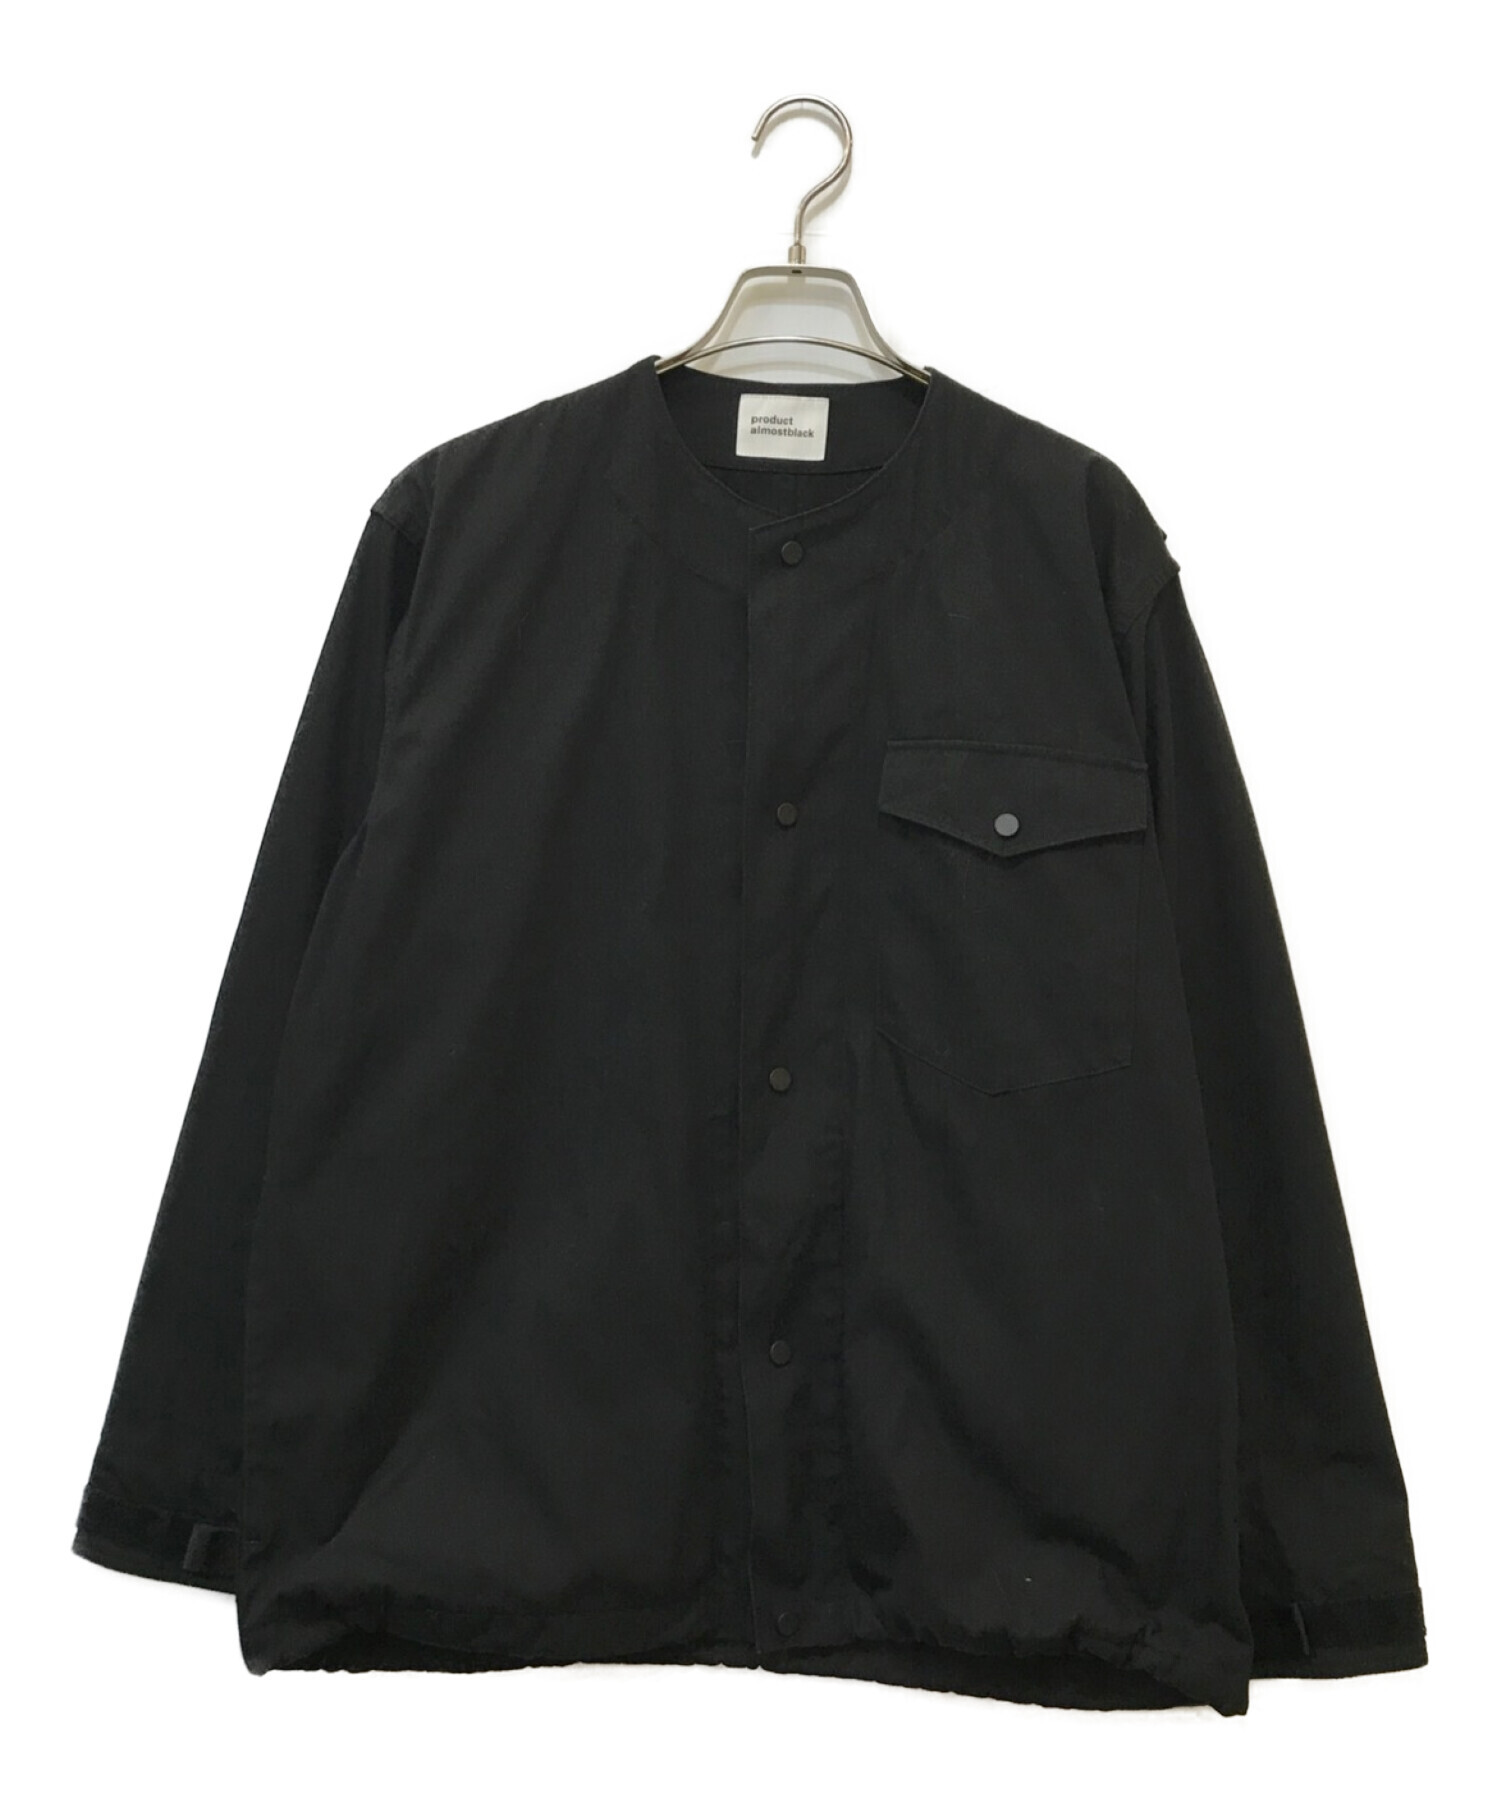 ALMOSTBLACK (オールモストブラック) ノーカラージャケット ブラック サイズ:1